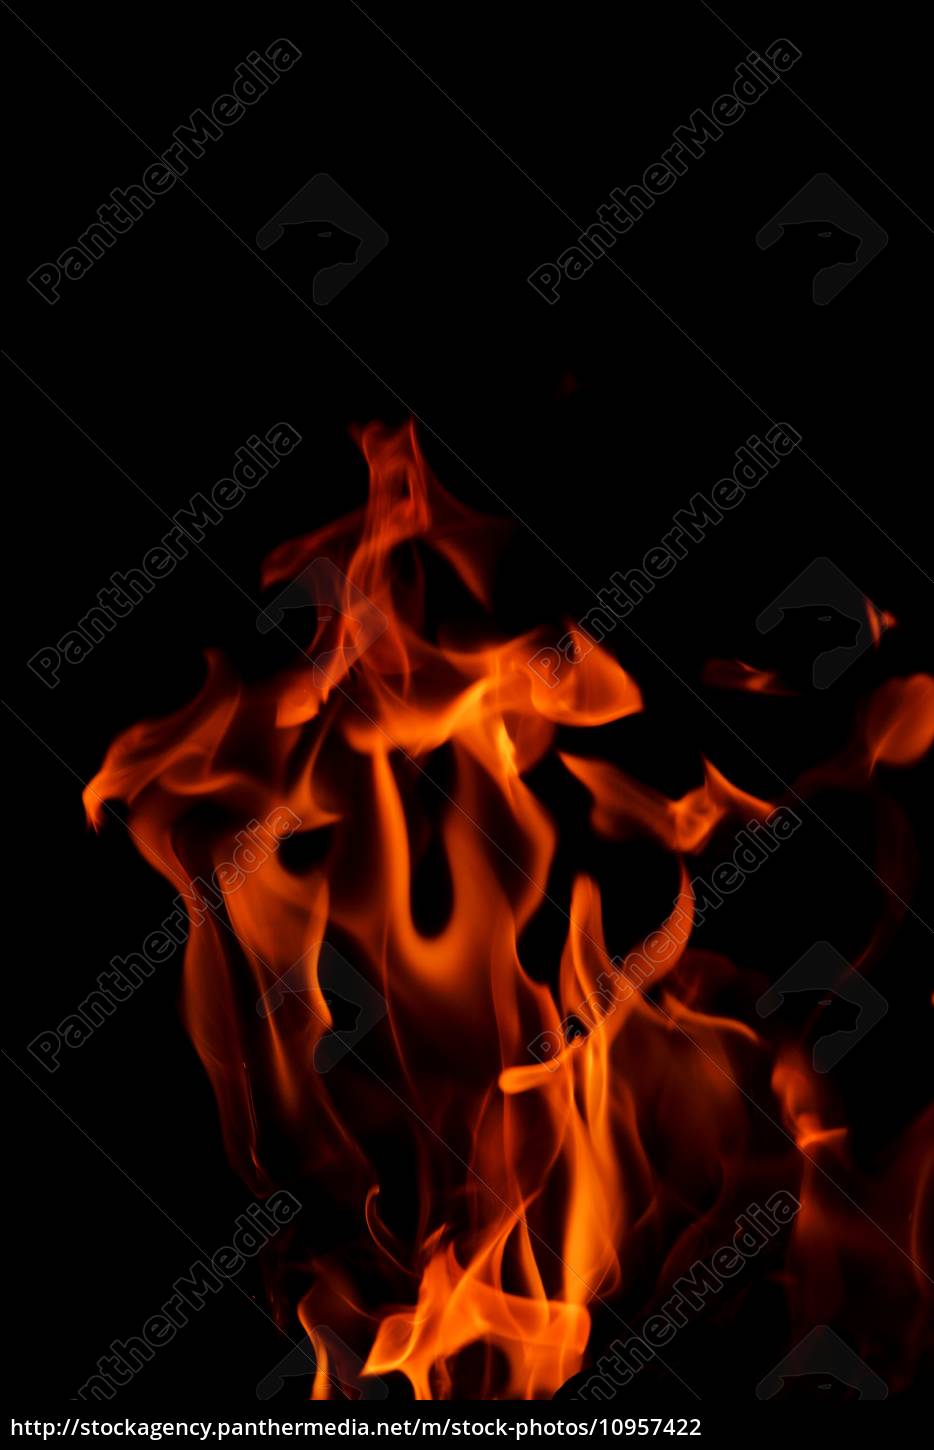 Chama ardente do fogo no fundo preto, Foto Premium